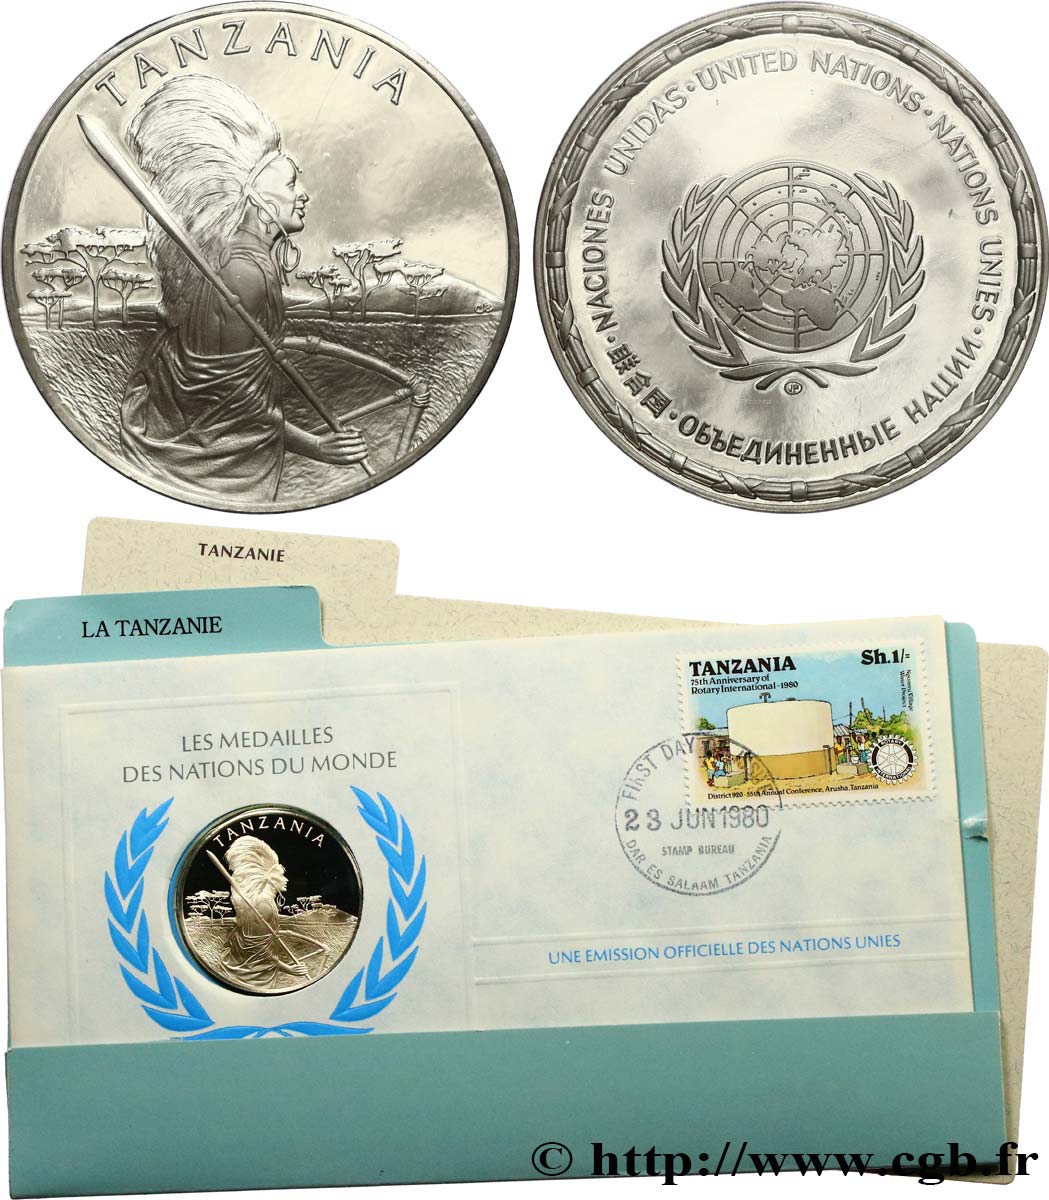 LES MÉDAILLES DES NATIONS DU MONDE Médaille, Tanzanie MS